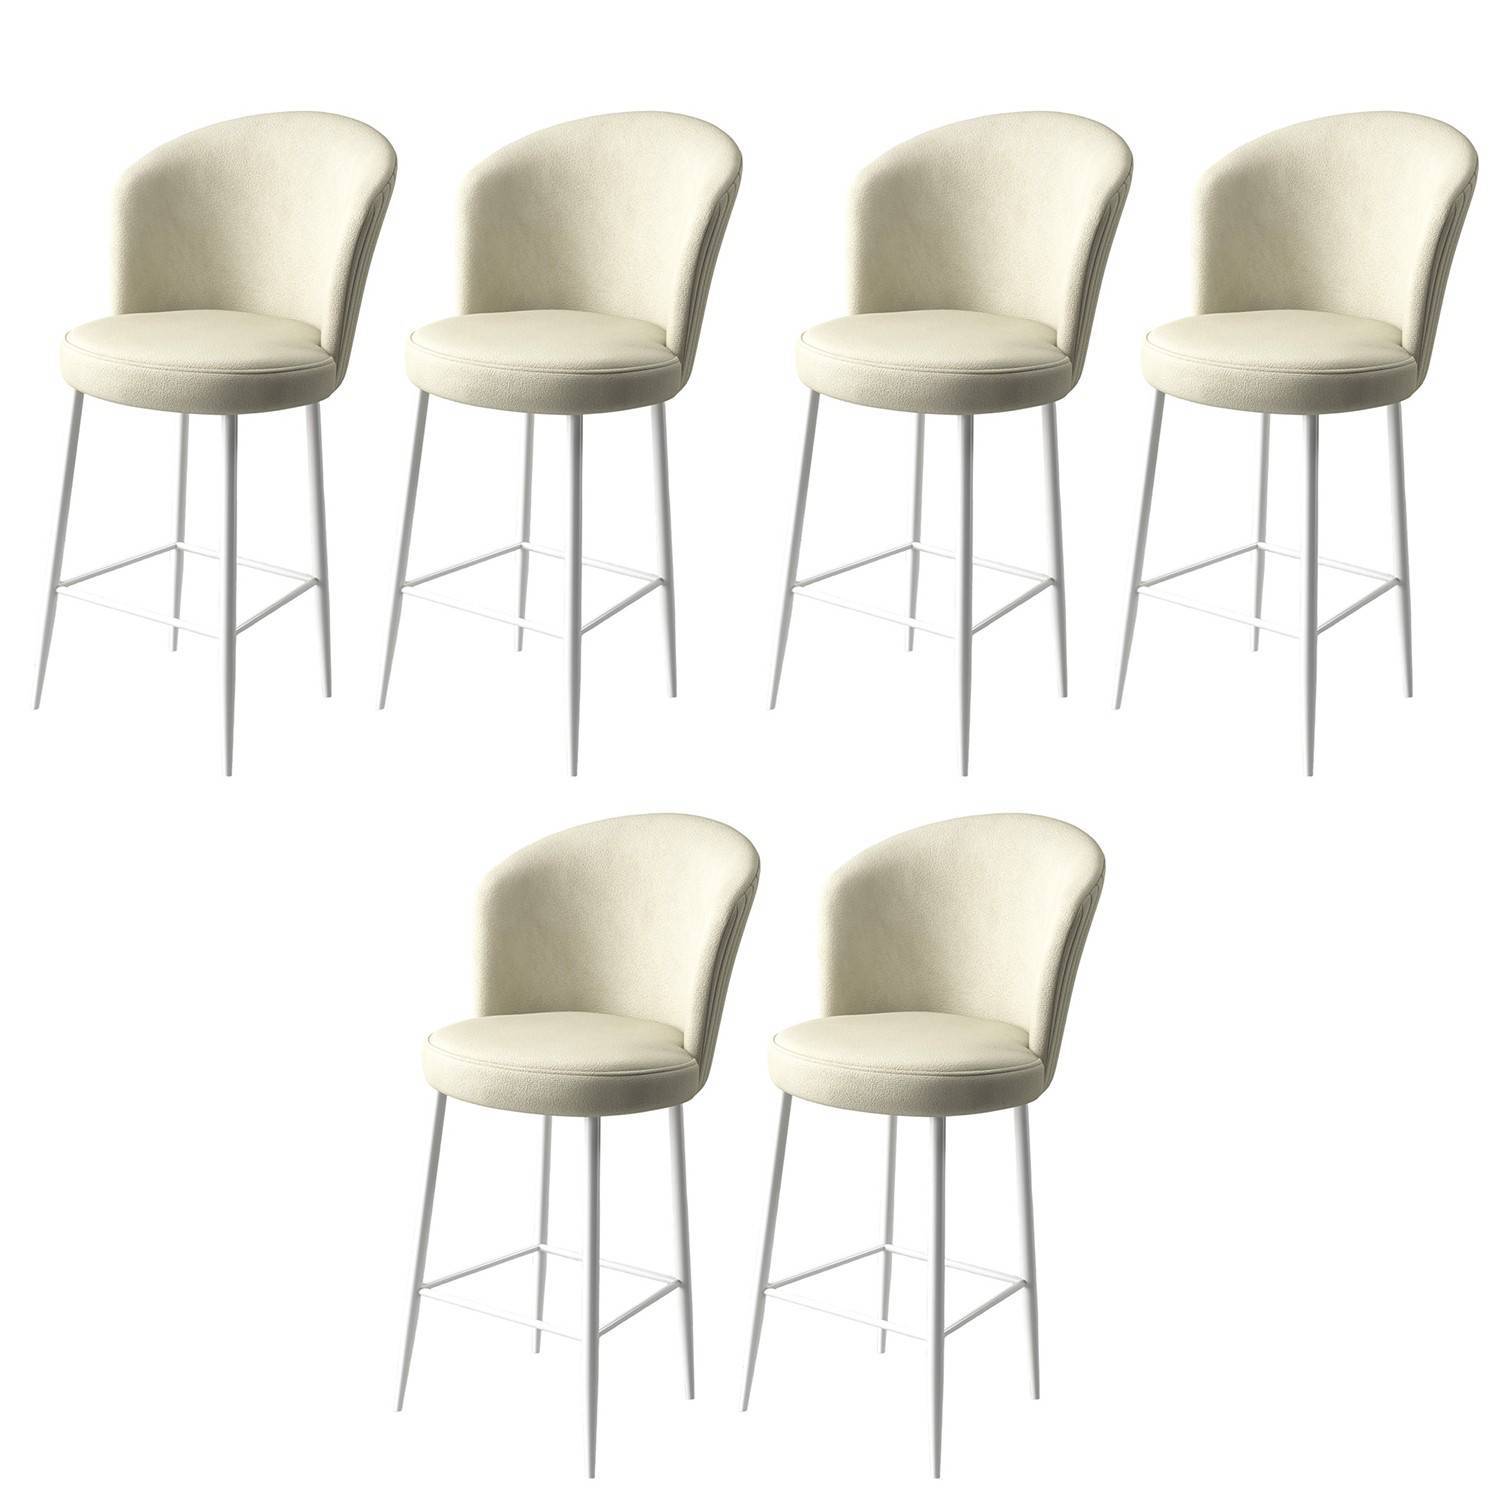 Lote de 6 sillas de bar Floranso de terciopelo crema y metal blanco